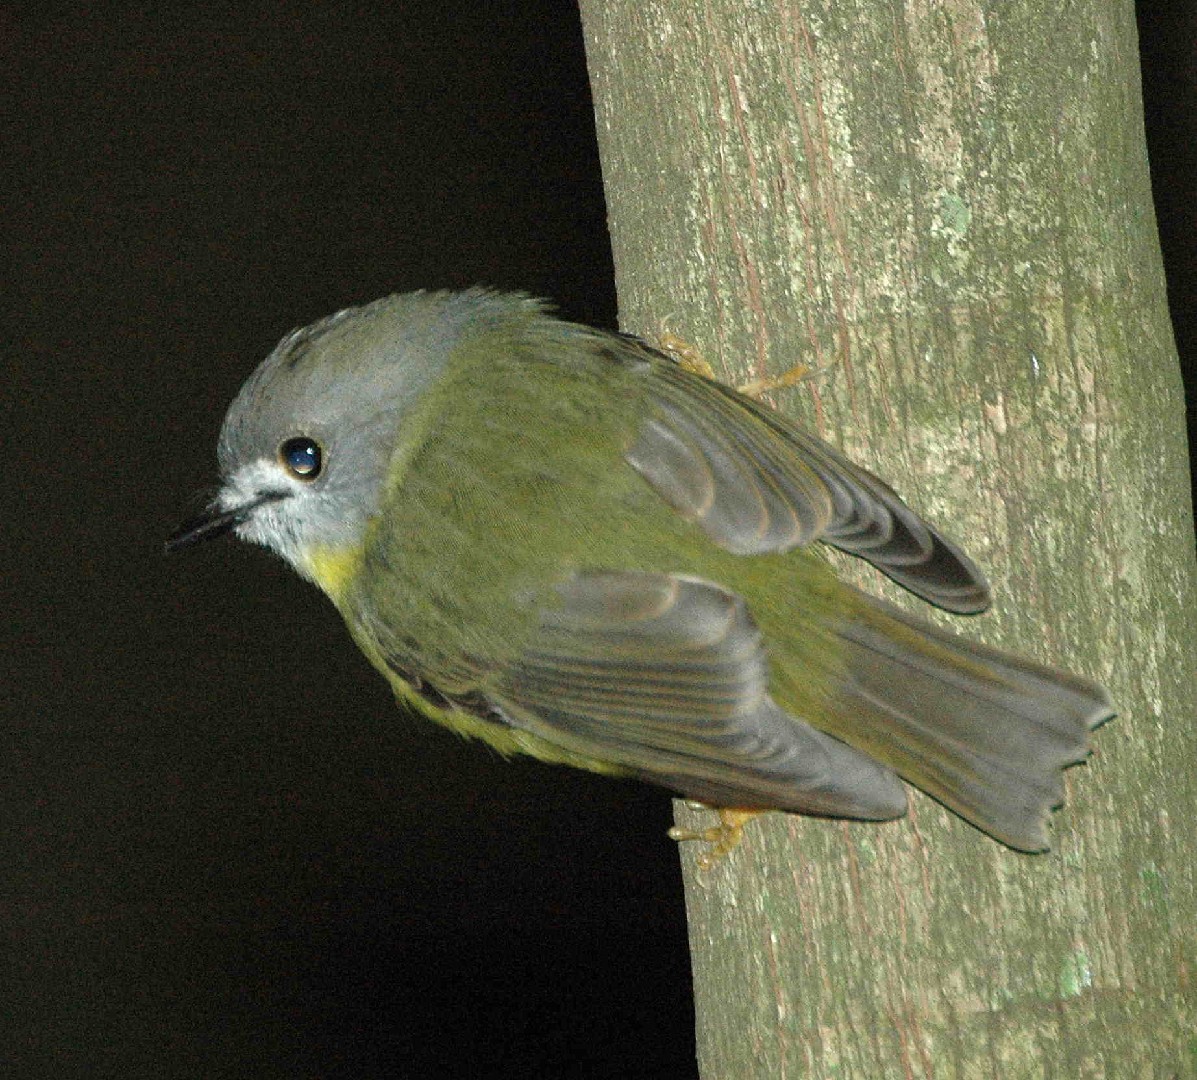 Pale-yellow Robin (Tregellasia capito)